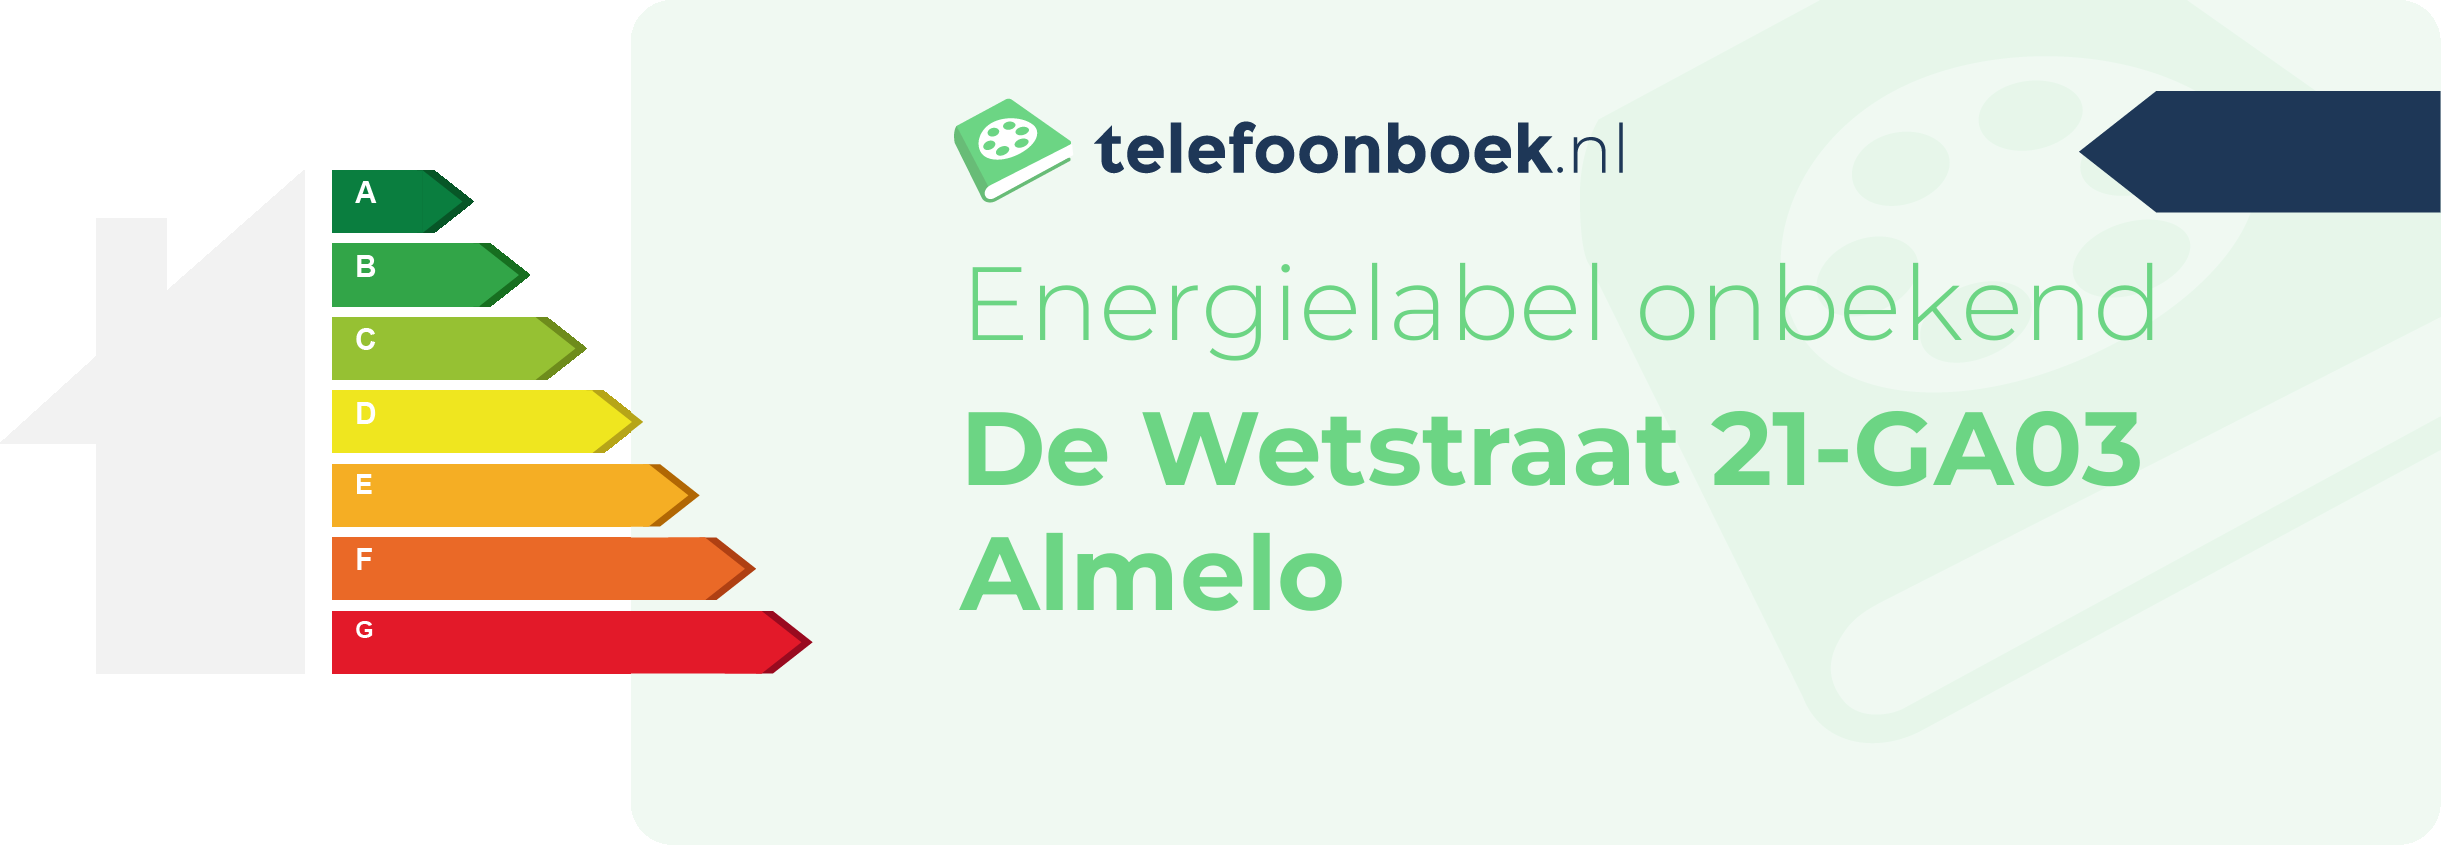 Energielabel De Wetstraat 21-GA03 Almelo